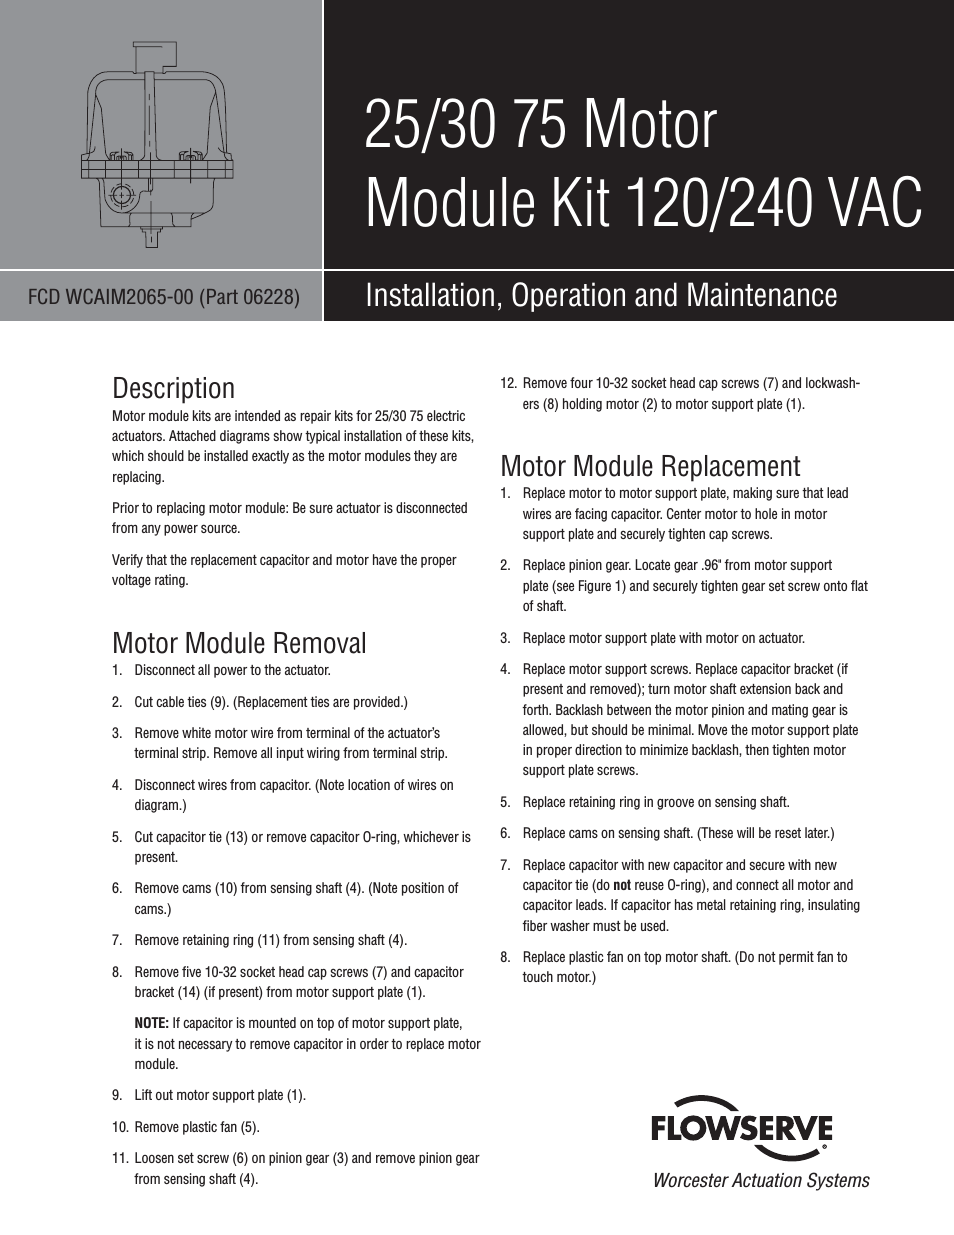 25 75 Motor Module Kit 120/240 VAC